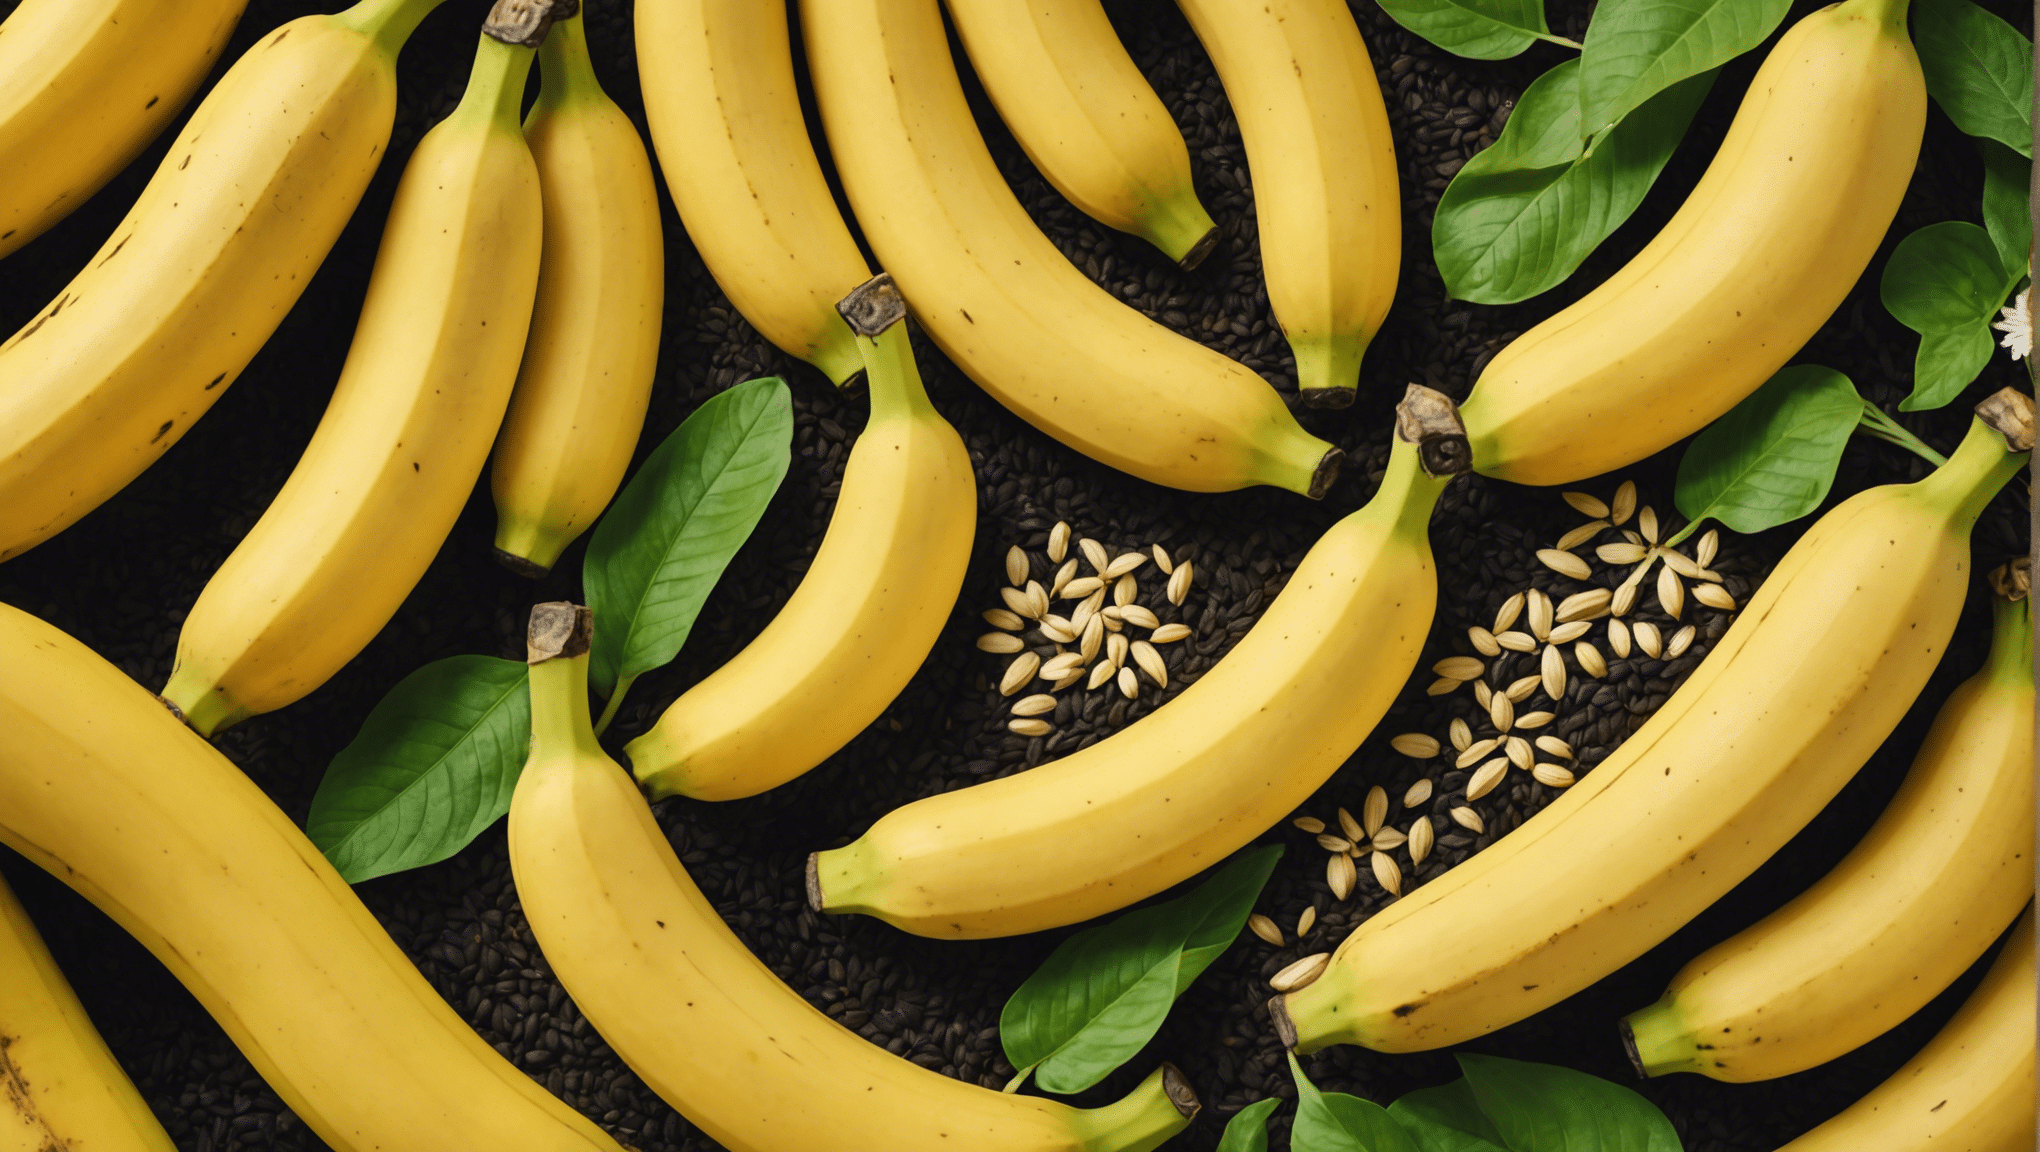 scopri se è sicuro mangiare le banane con i semi con la nostra guida completa. scopri i potenziali rischi e benefici del consumo di banane con semi.